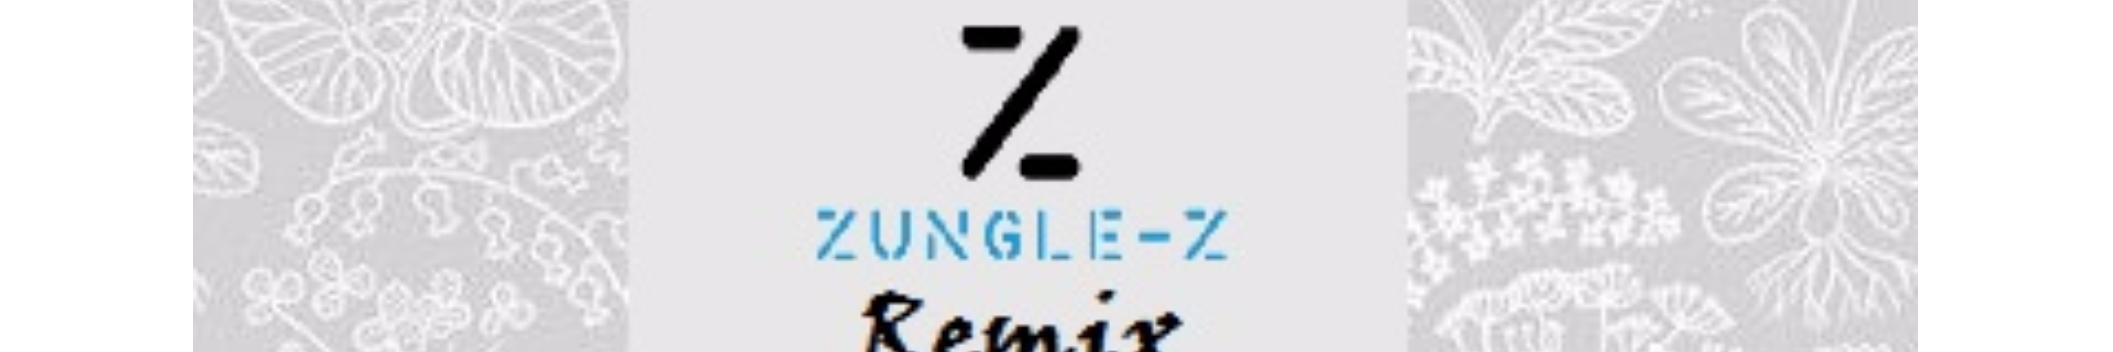 Zungle-Z